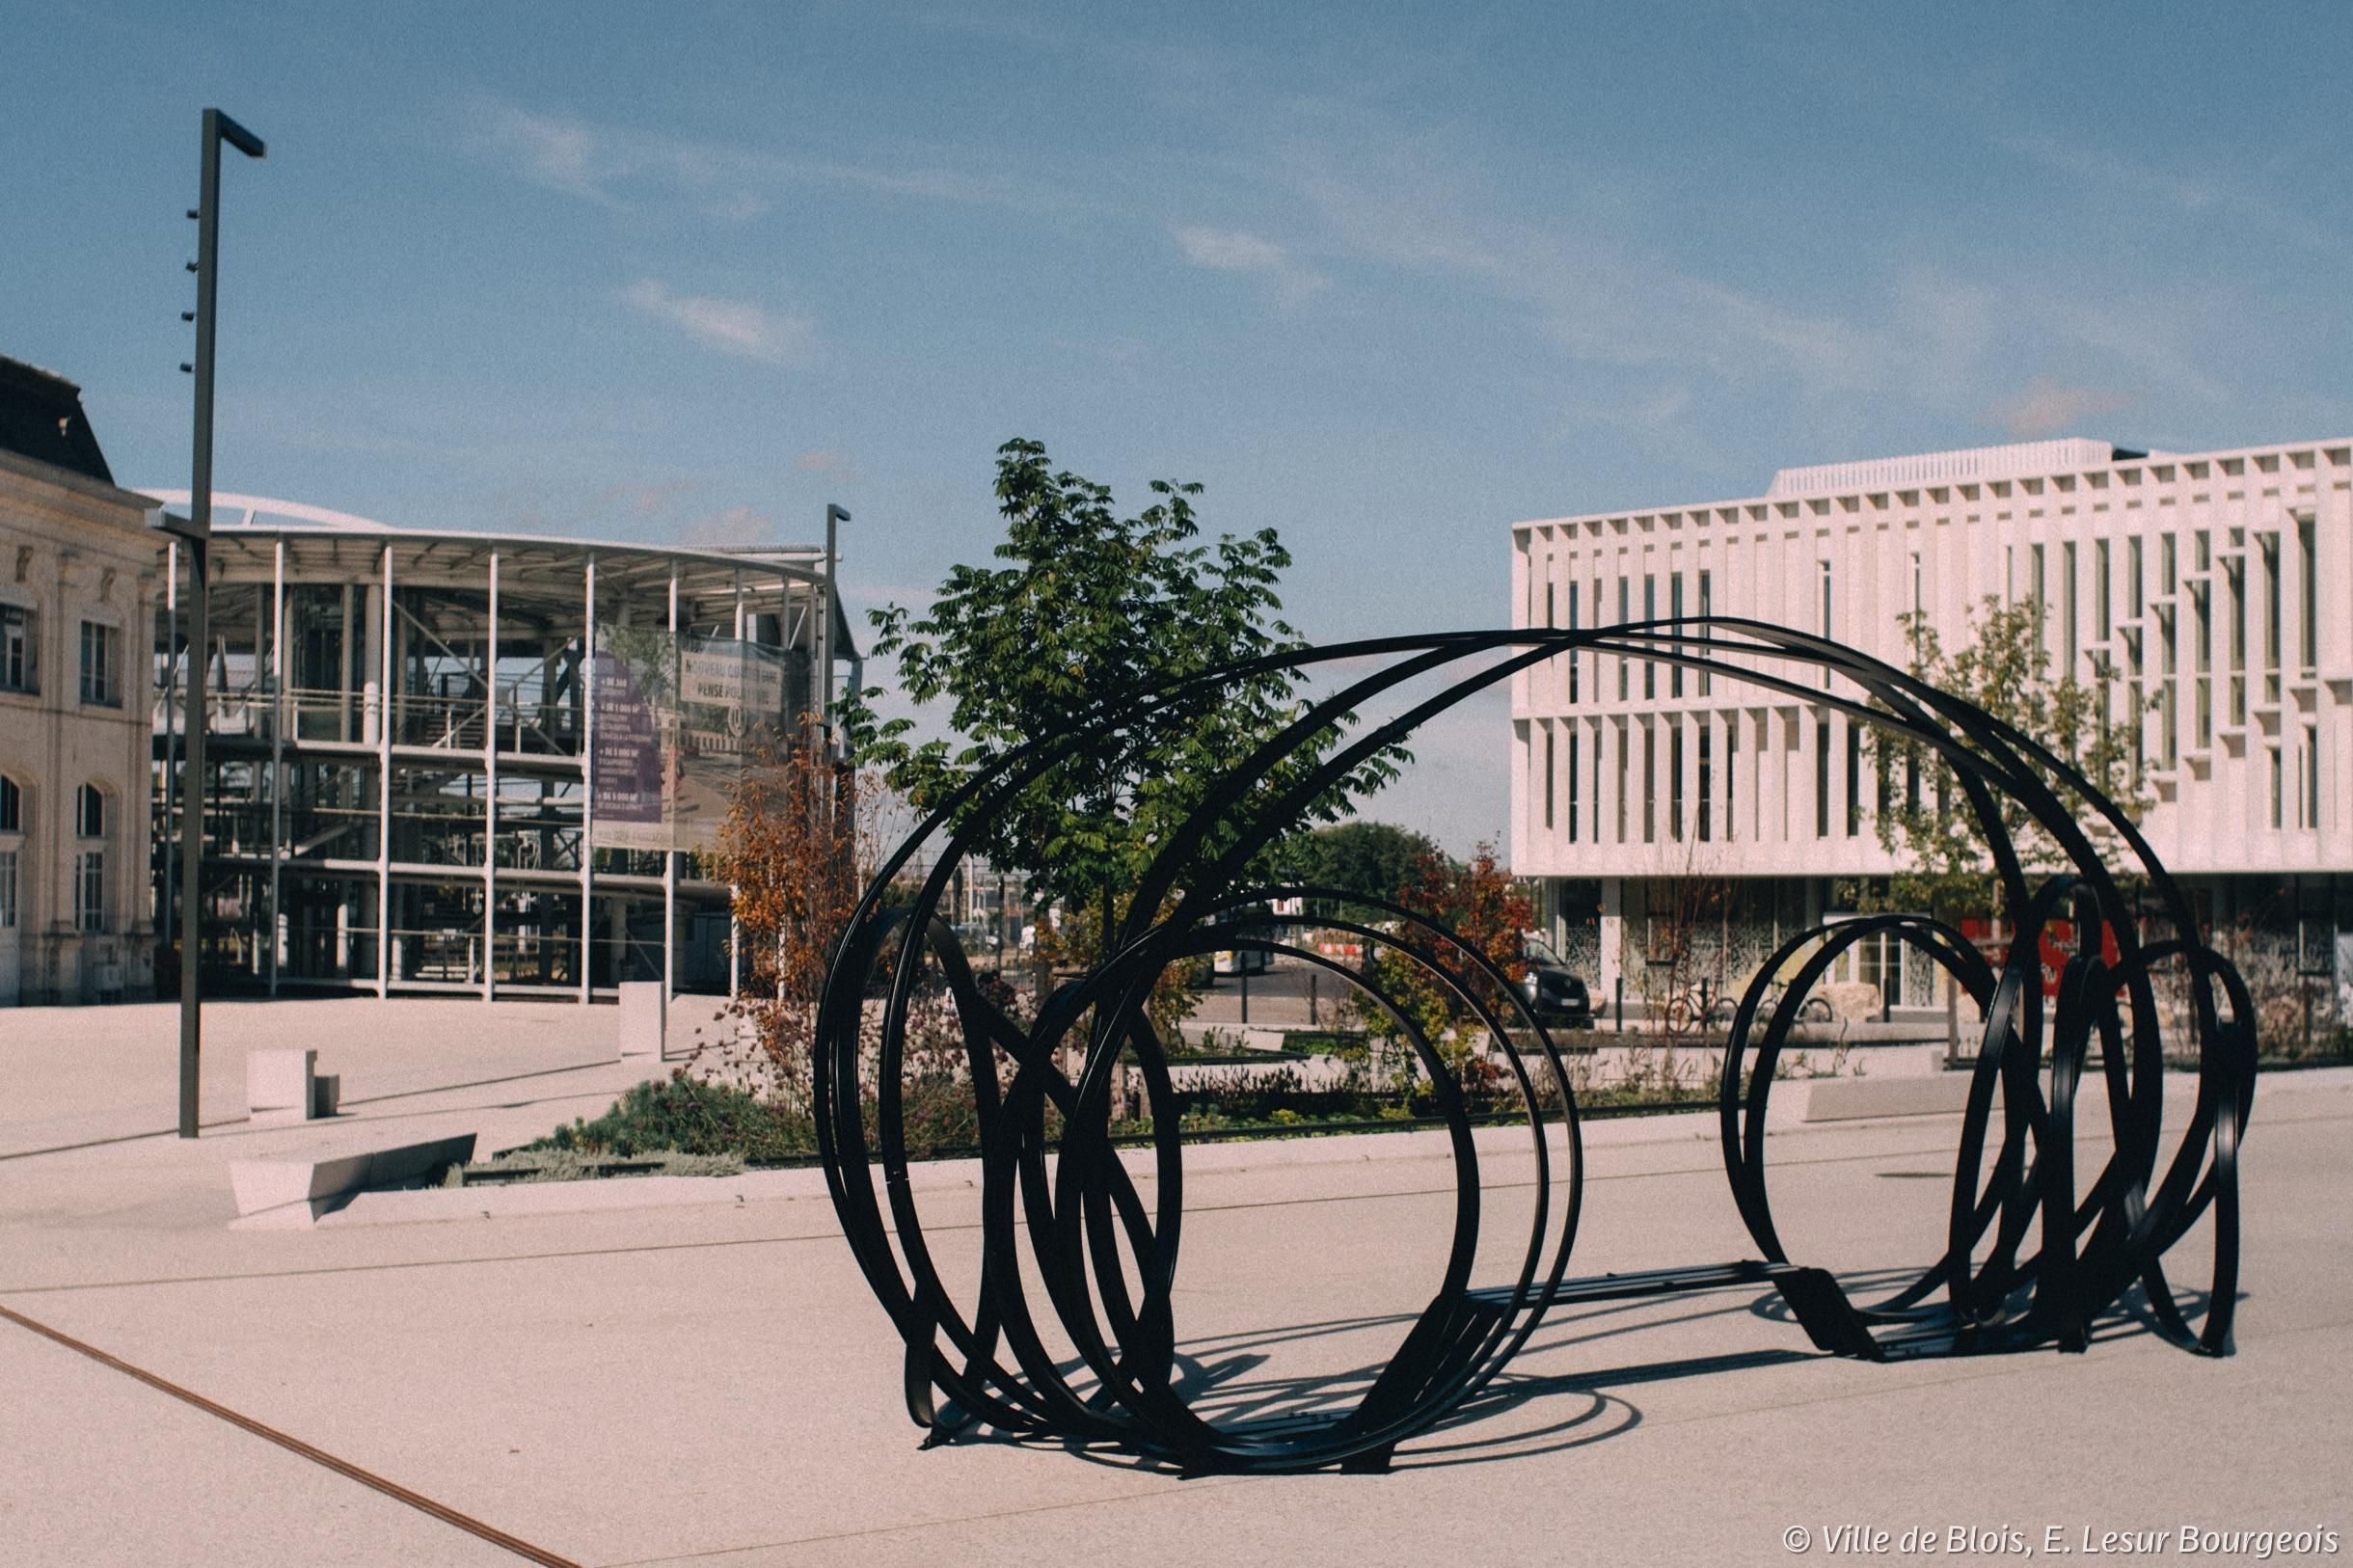 Sculpture de Pablo Reinoso sur le parvis de la gare. L’œuvre est faite de plusieurs tiges metalliques noires, qui forment deux ensembles de cercles reliés entre-eux, avec un banc au milieu. La rotonde et le bâtiment de l'Insa sont à l’arrière-plan. 